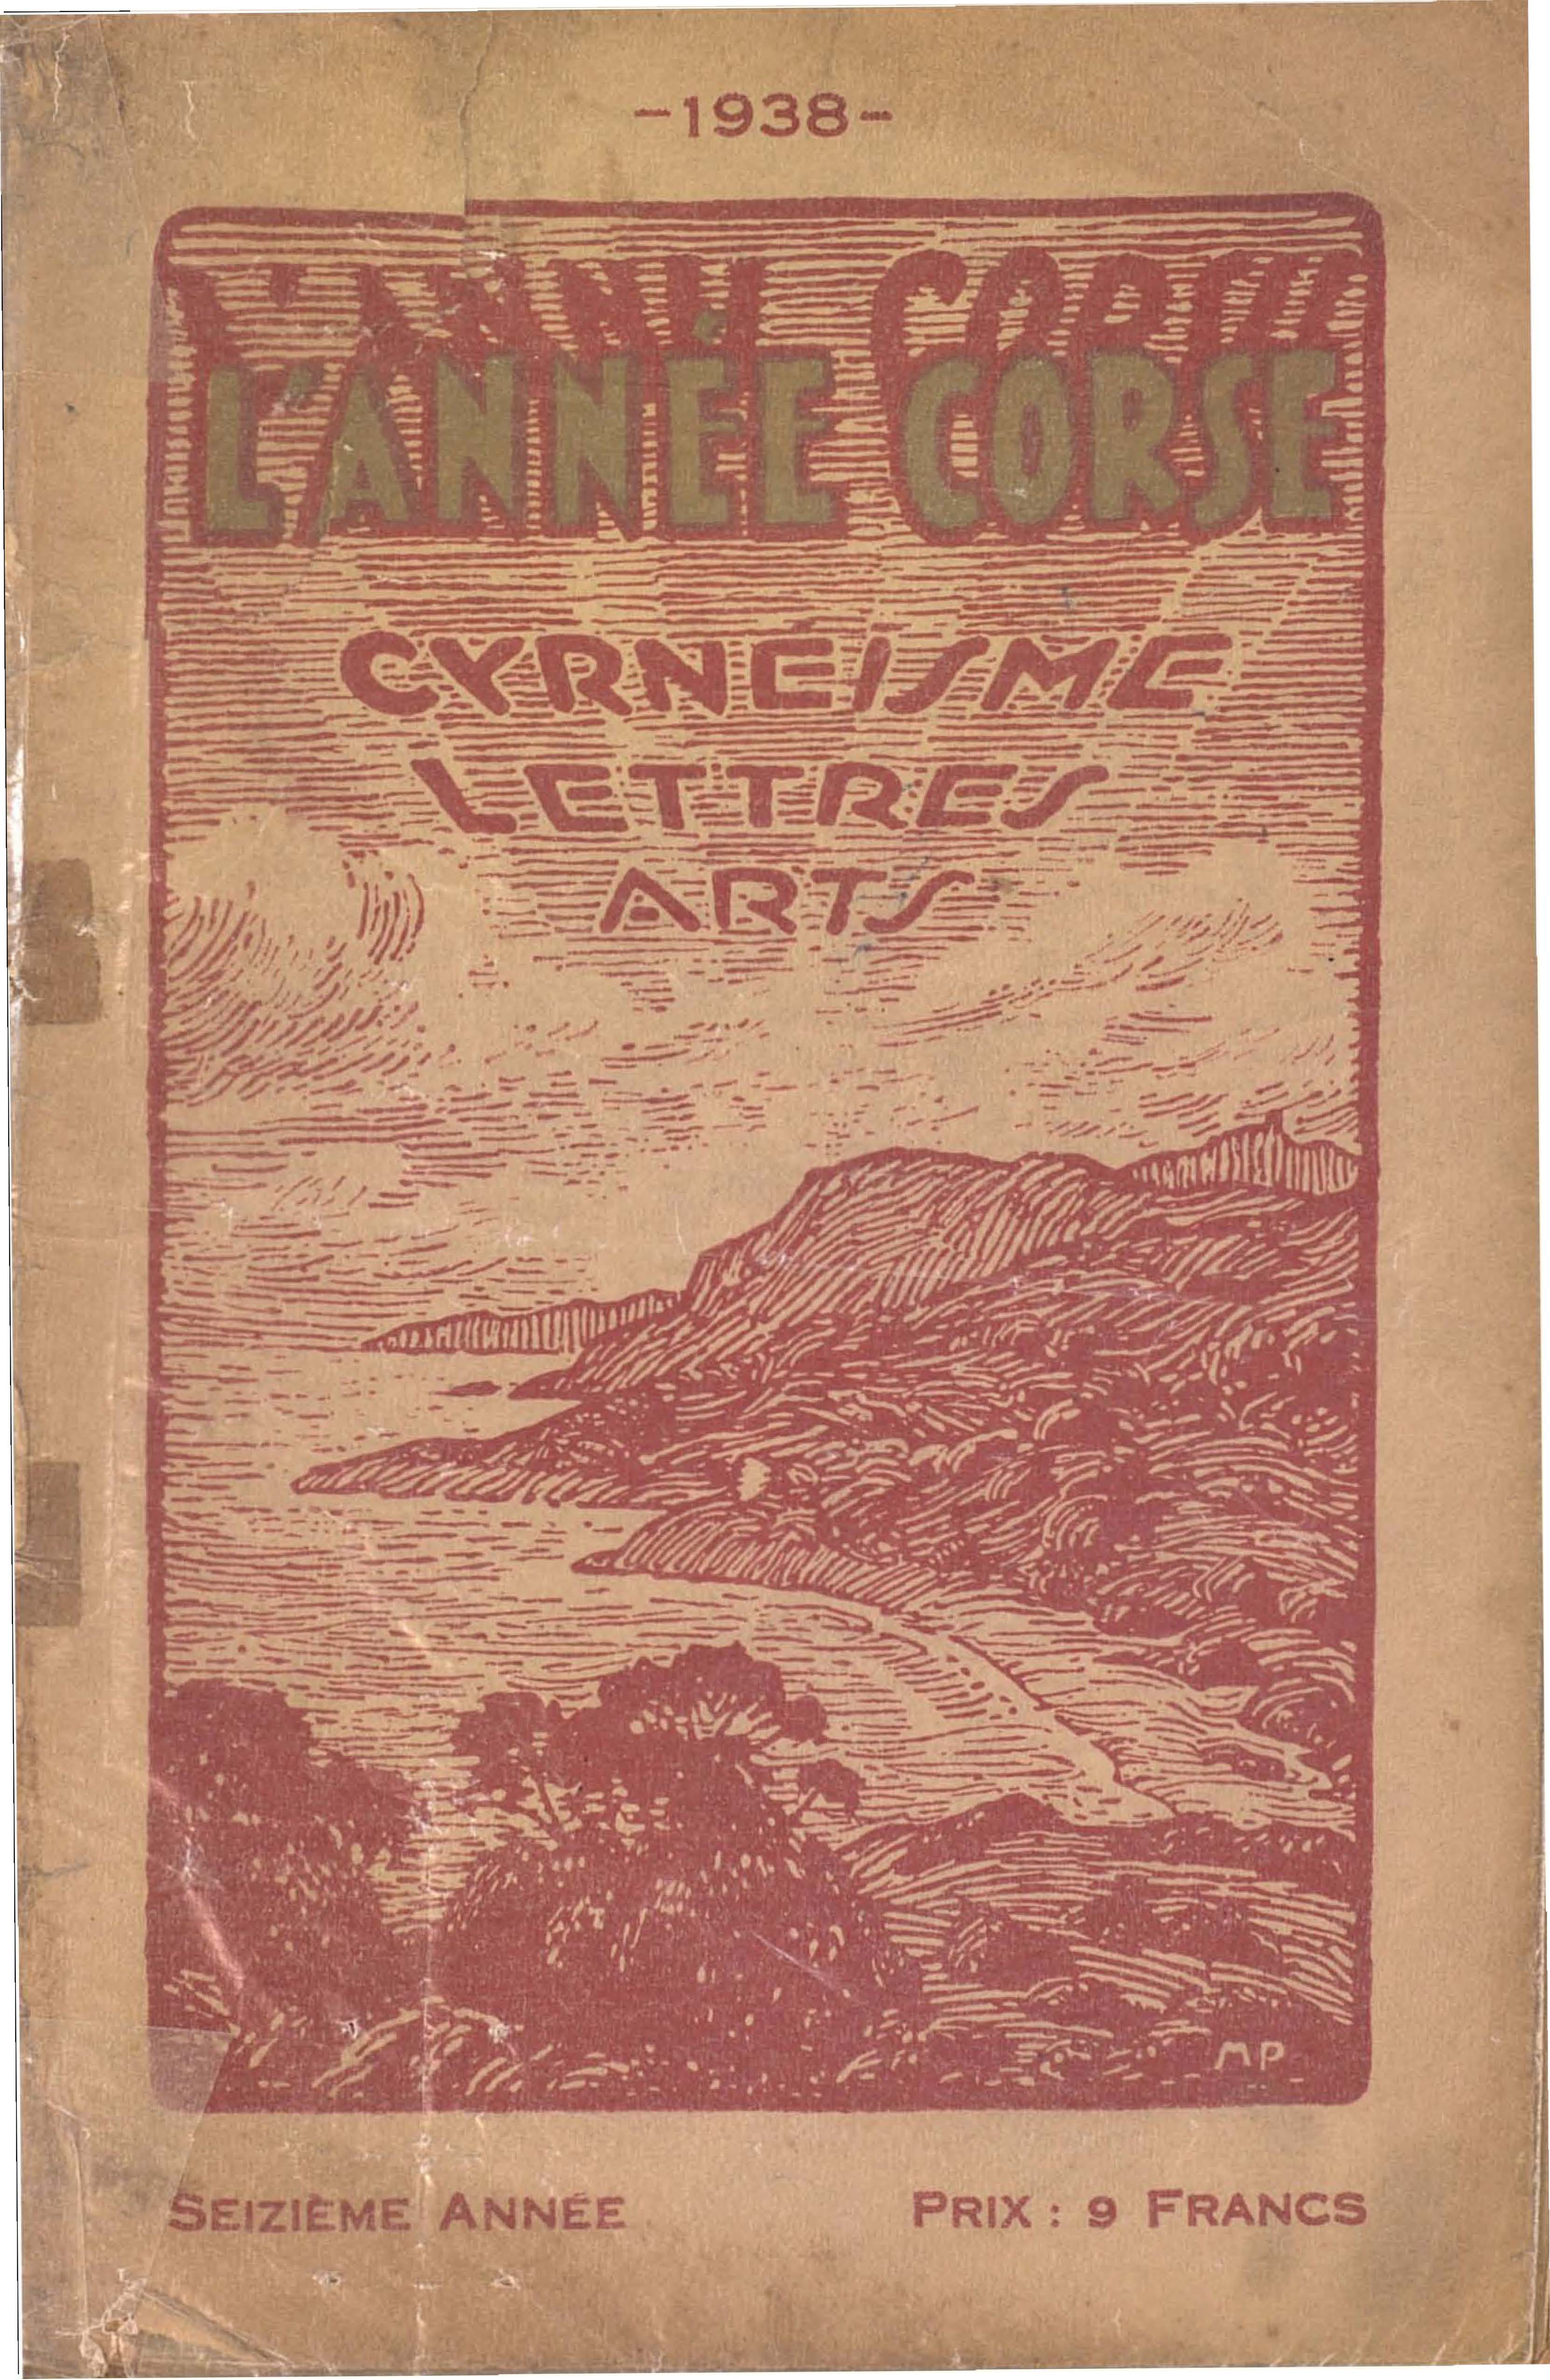 >L'Année Corse (L'Annu Corsu) 1938